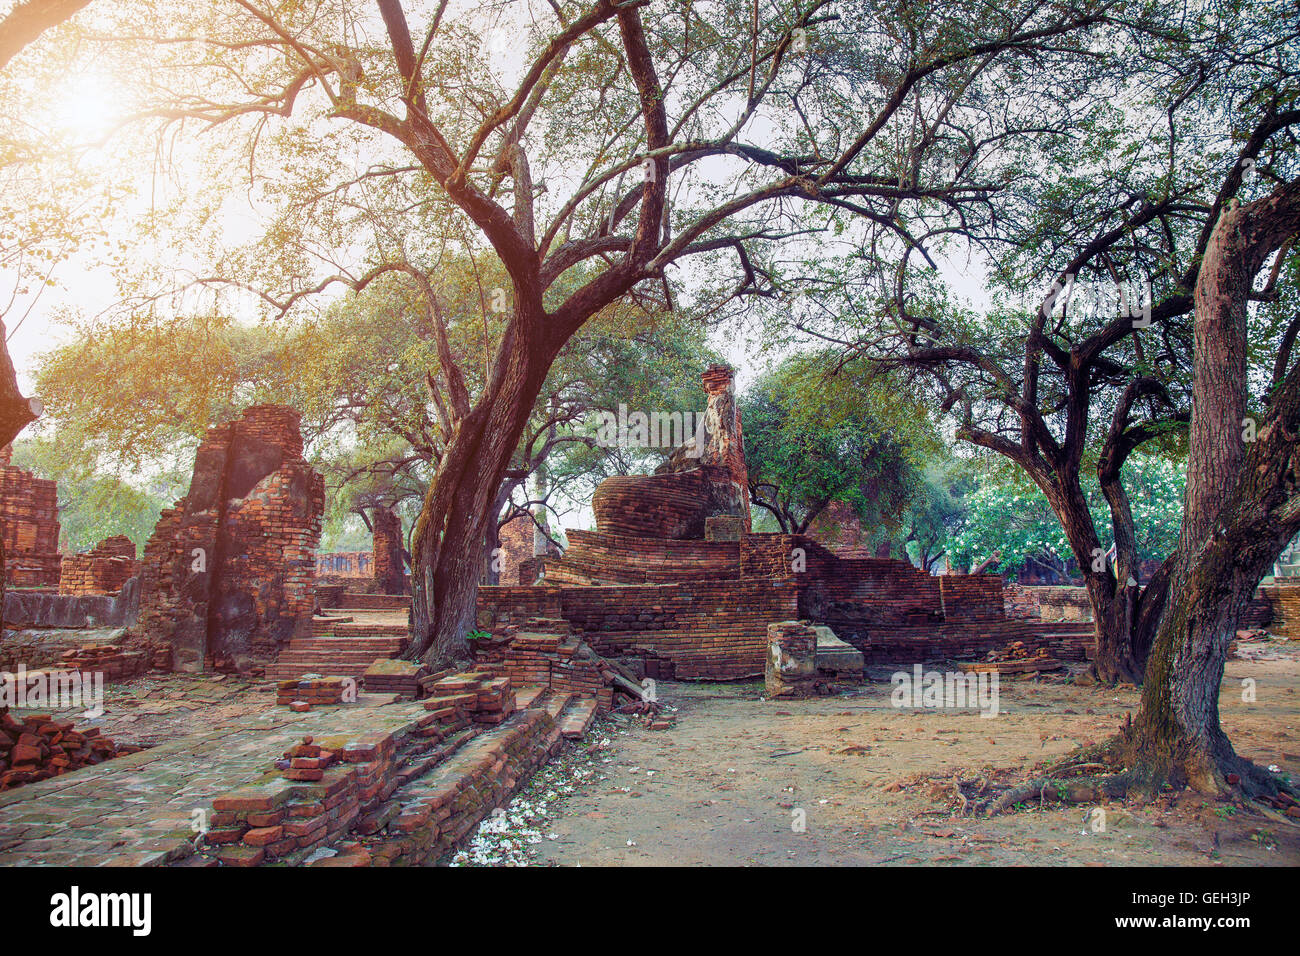 Ruines de l'ancienne capitale du Siam - Ayutthaya, Thaïlande Banque D'Images